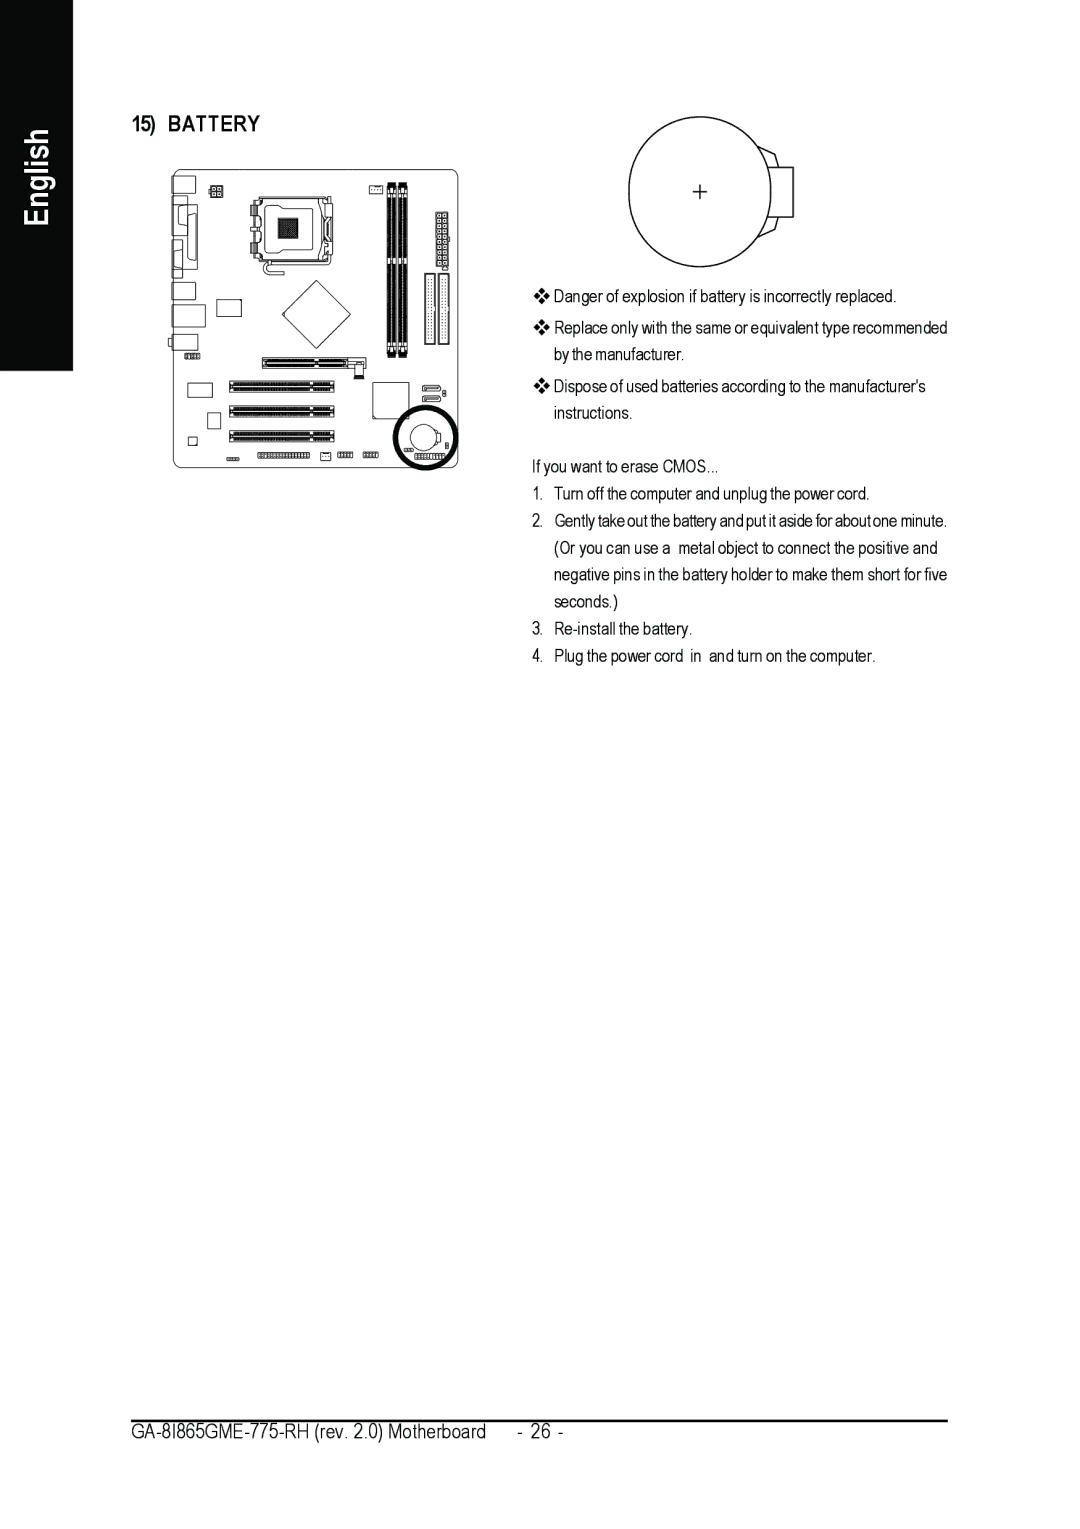 Gigabyte GA-8I865GME-775-RH user manual Battery 